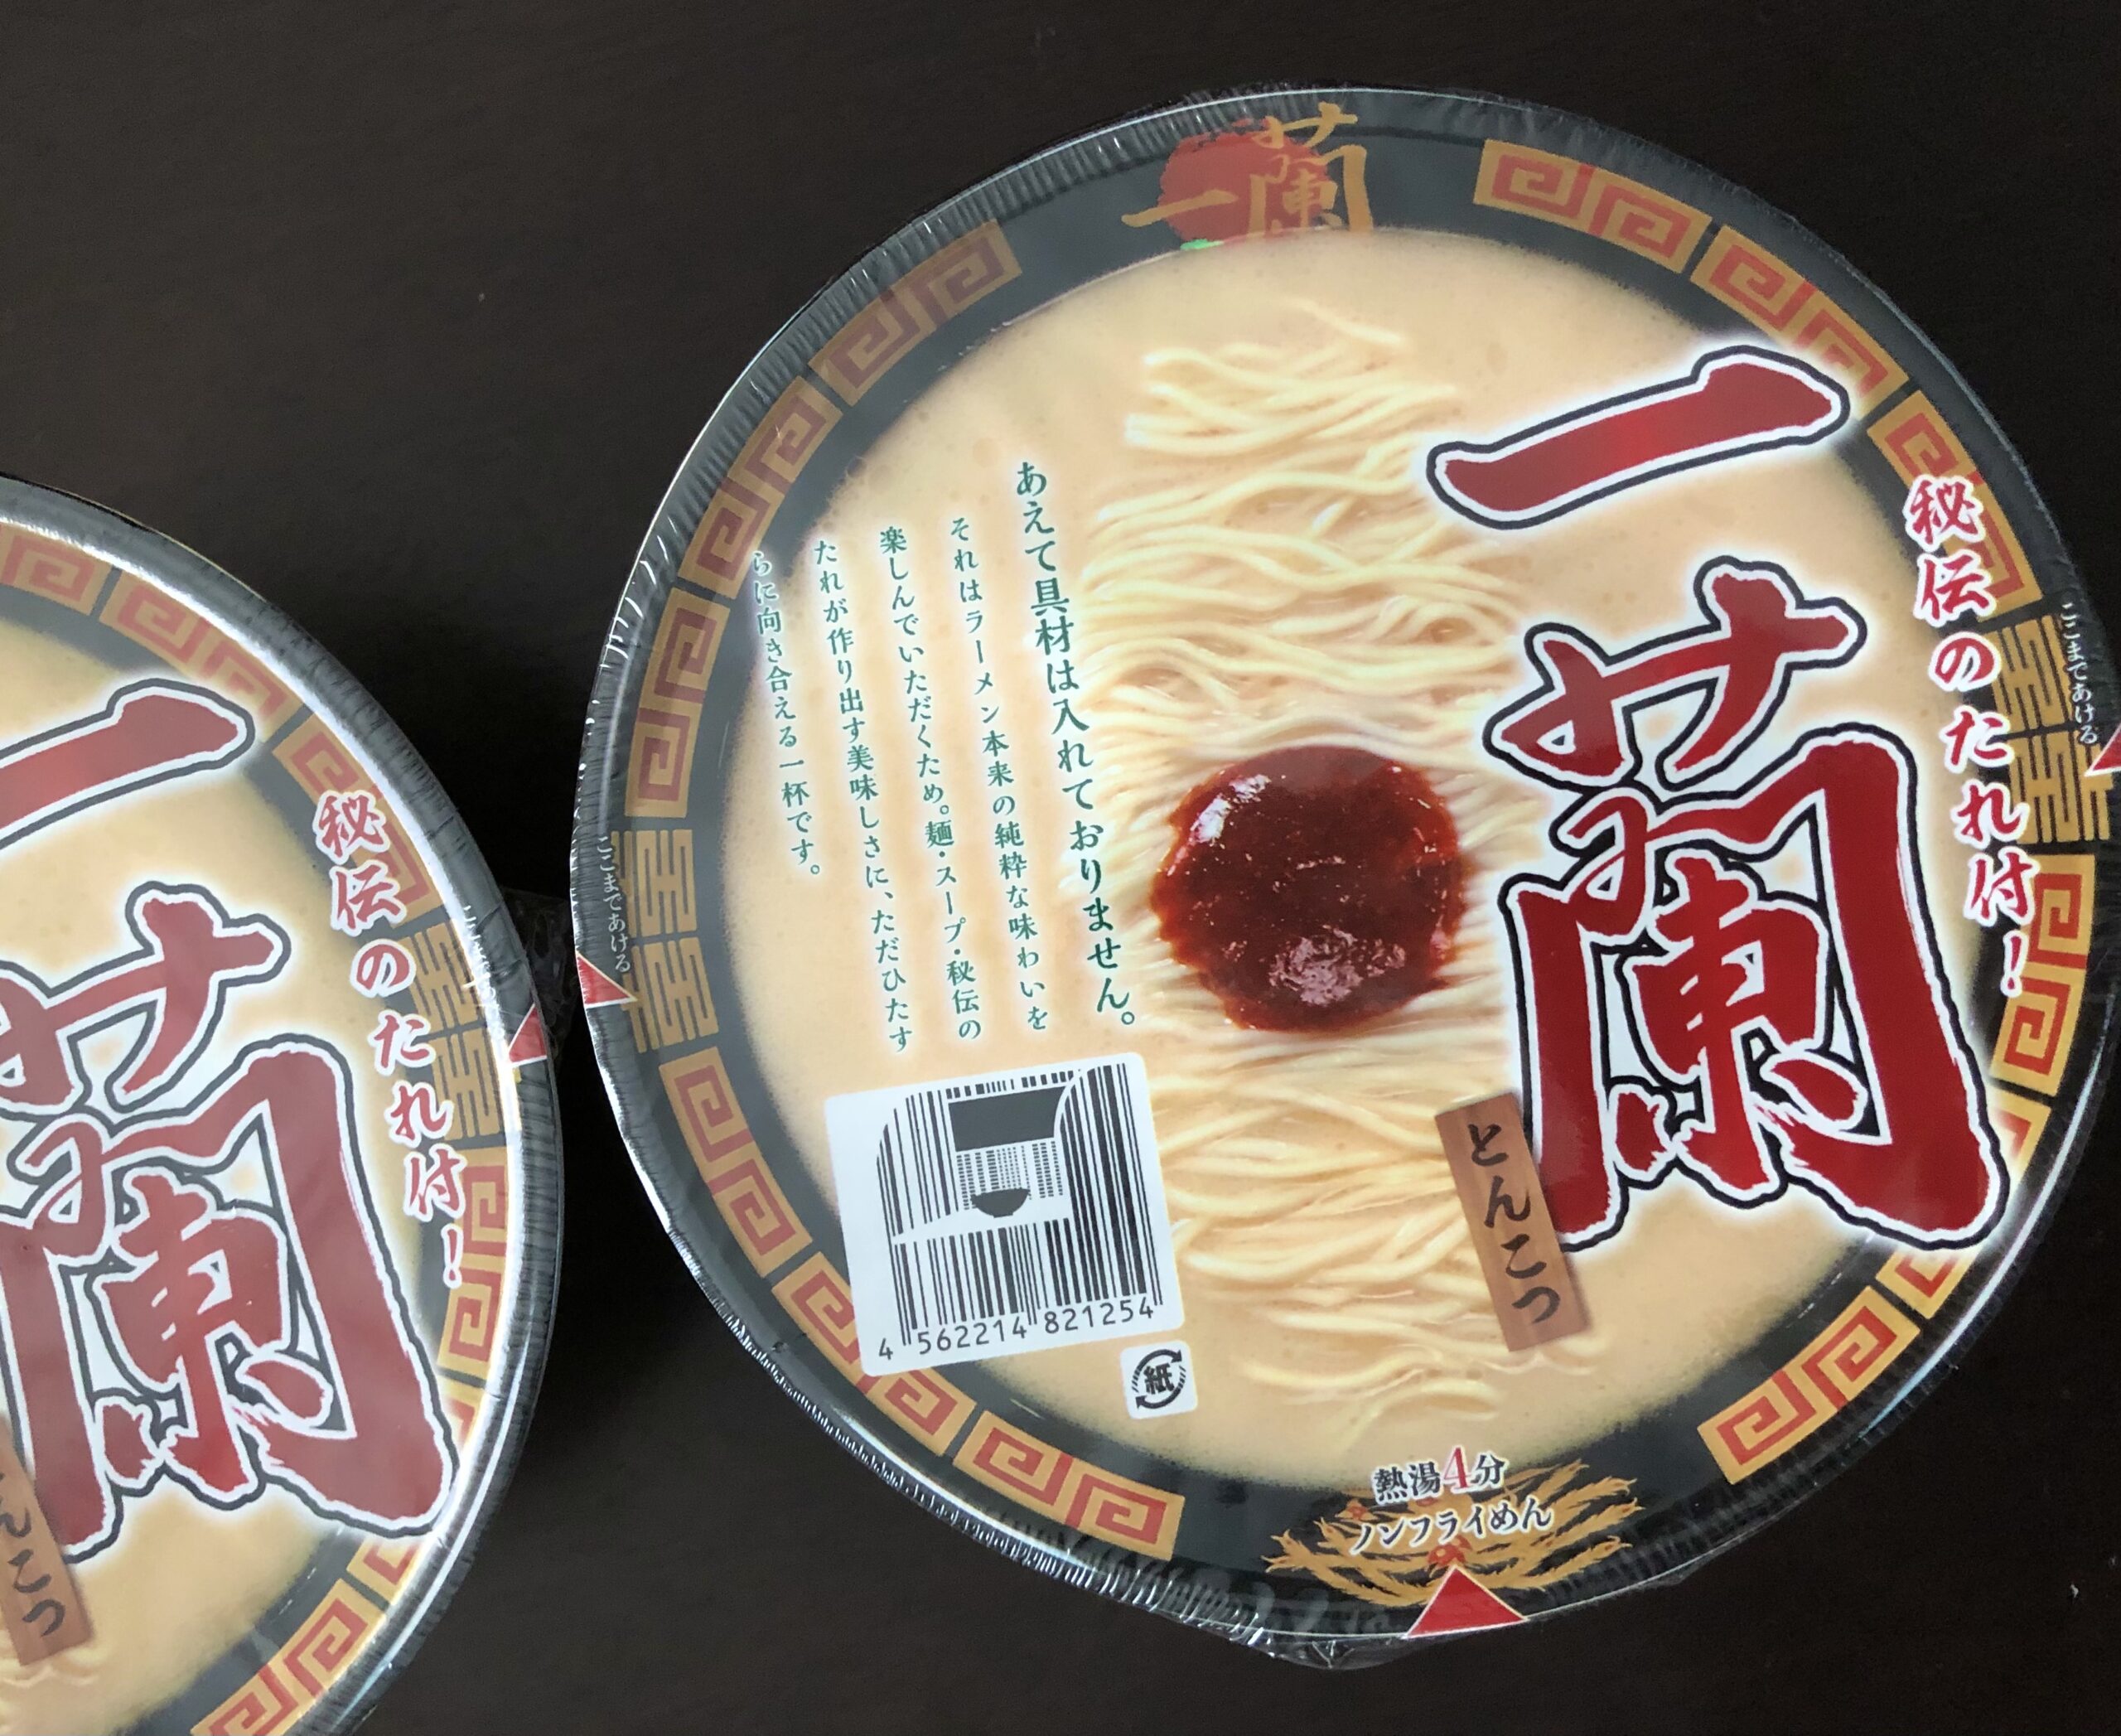 一蘭/とんこつ(カップ麺)